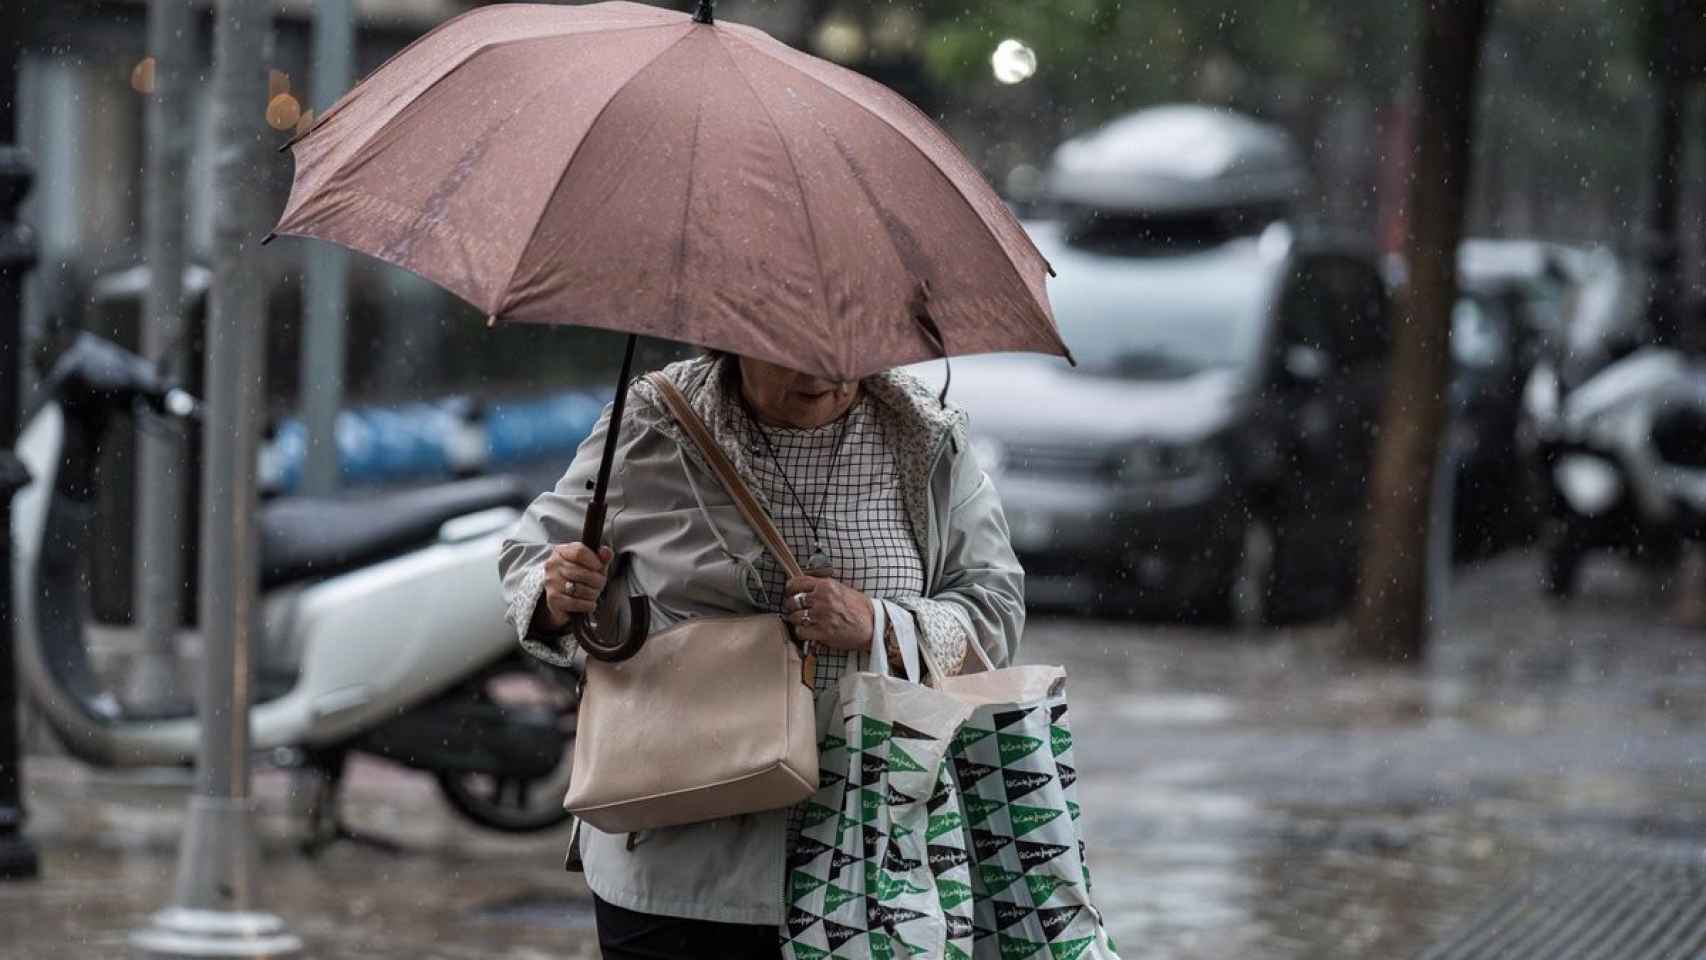 Una mujer pasea con un paraguas en una imagen de archivo.